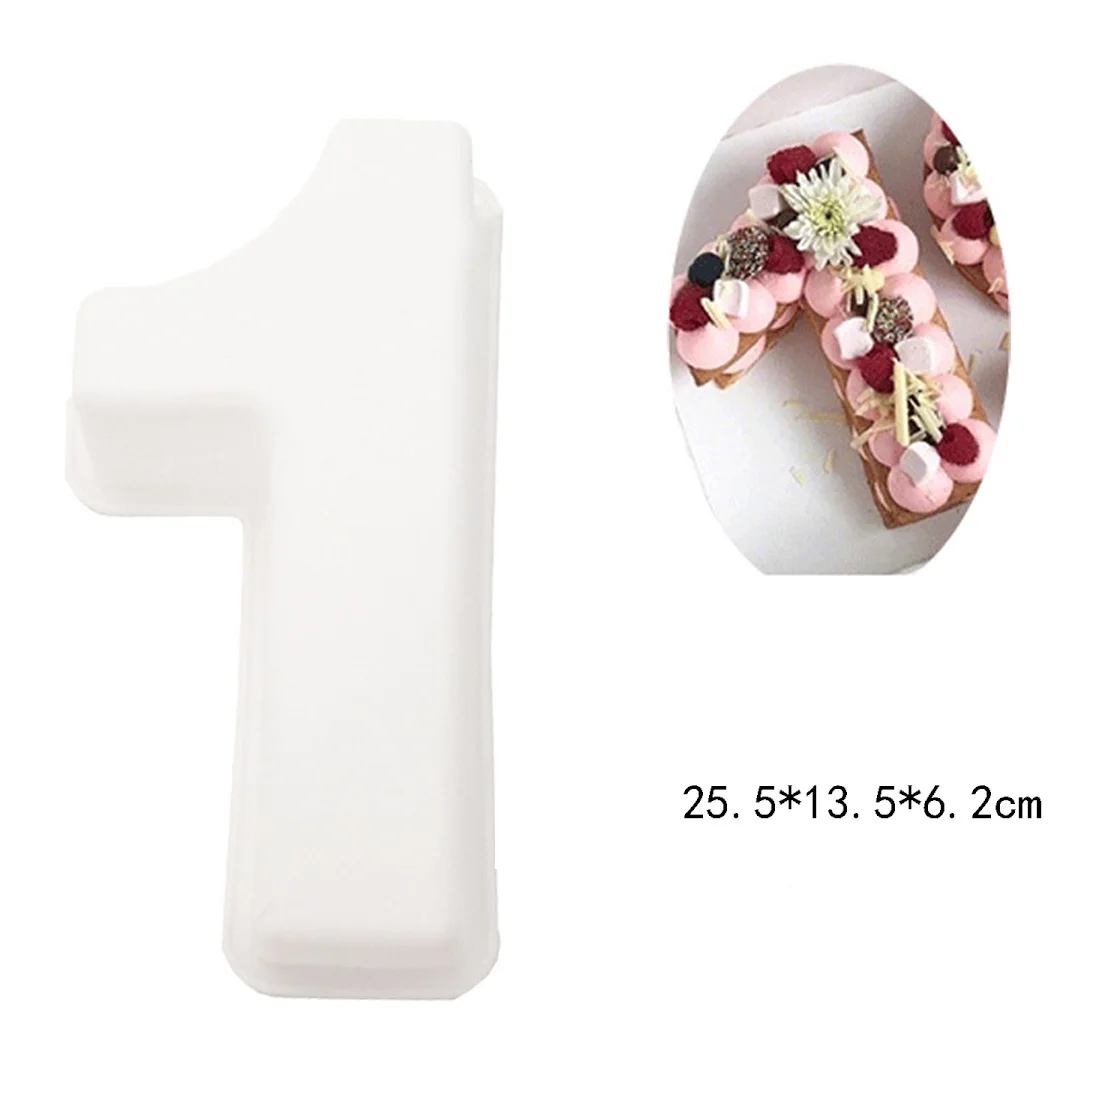 10 Cun фигура Шоколад DIY Инструменты для украшения тортов из мастики силиконовая форма кружева границы кухонные принадлежности для выпечки номер 0-9